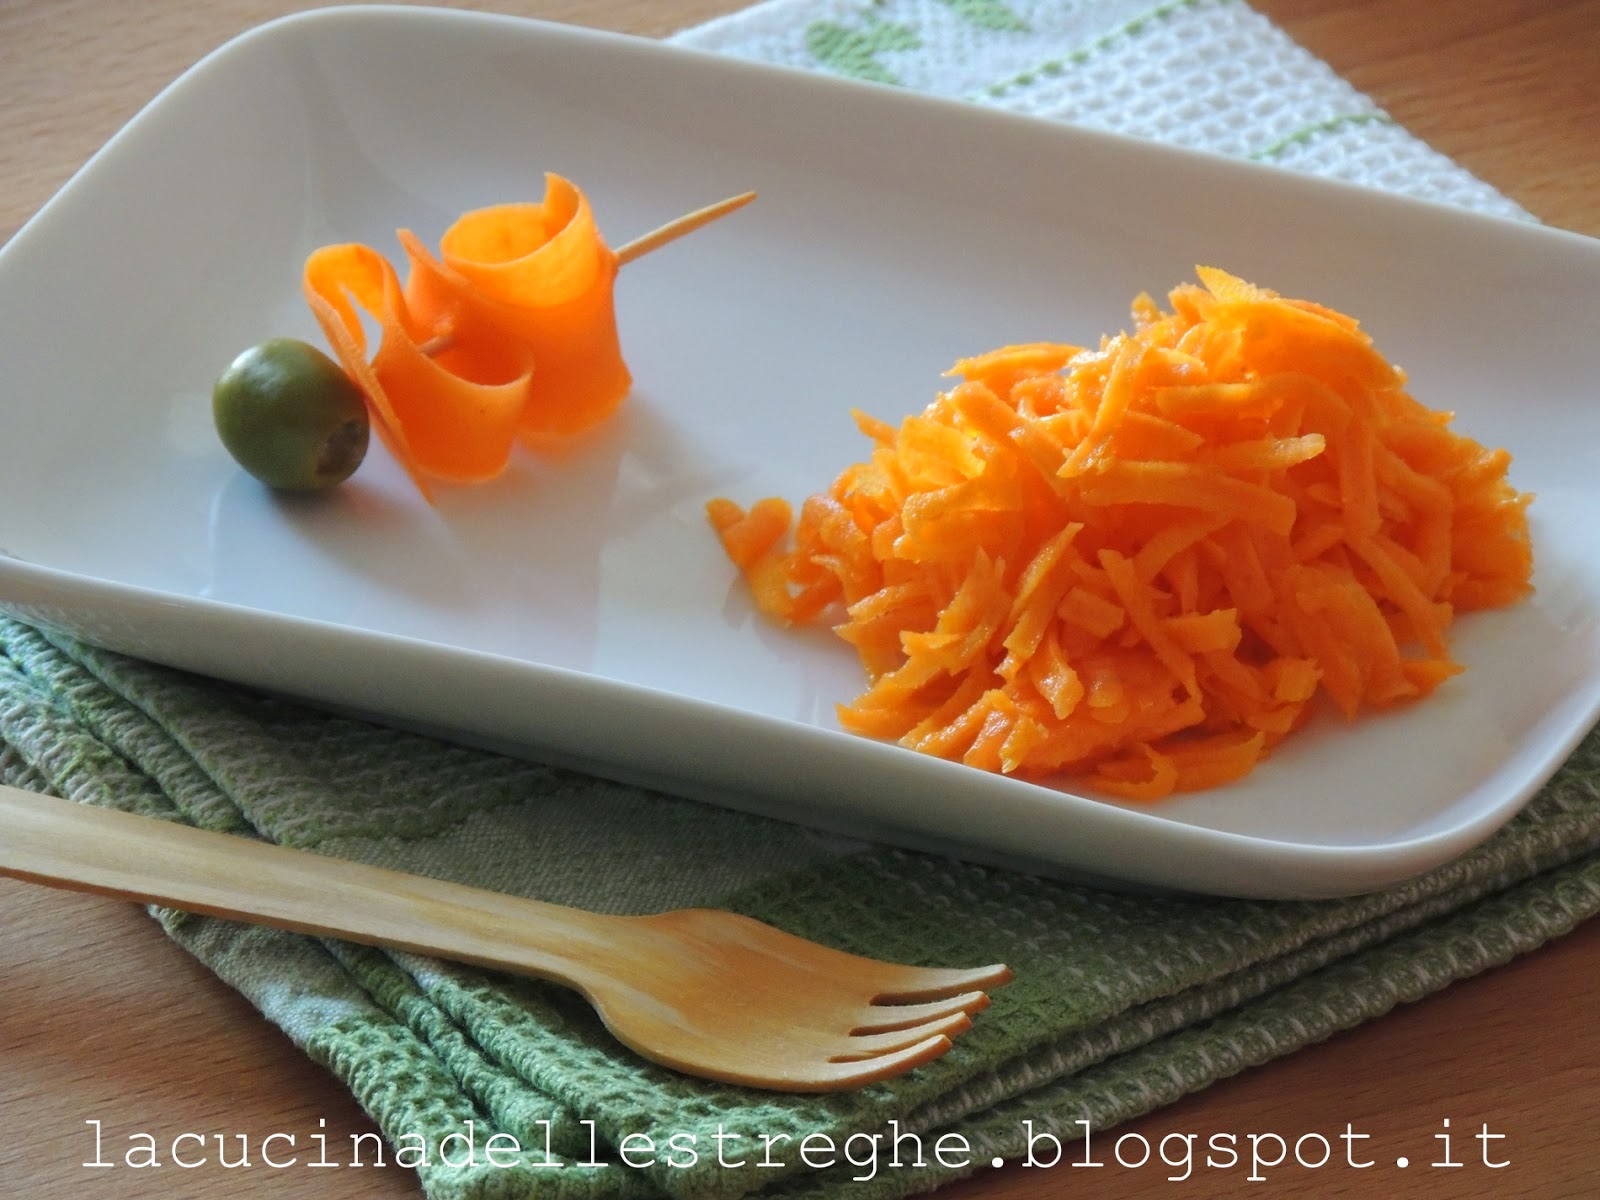 La cucina delle streghe: Julienne di carote marinate